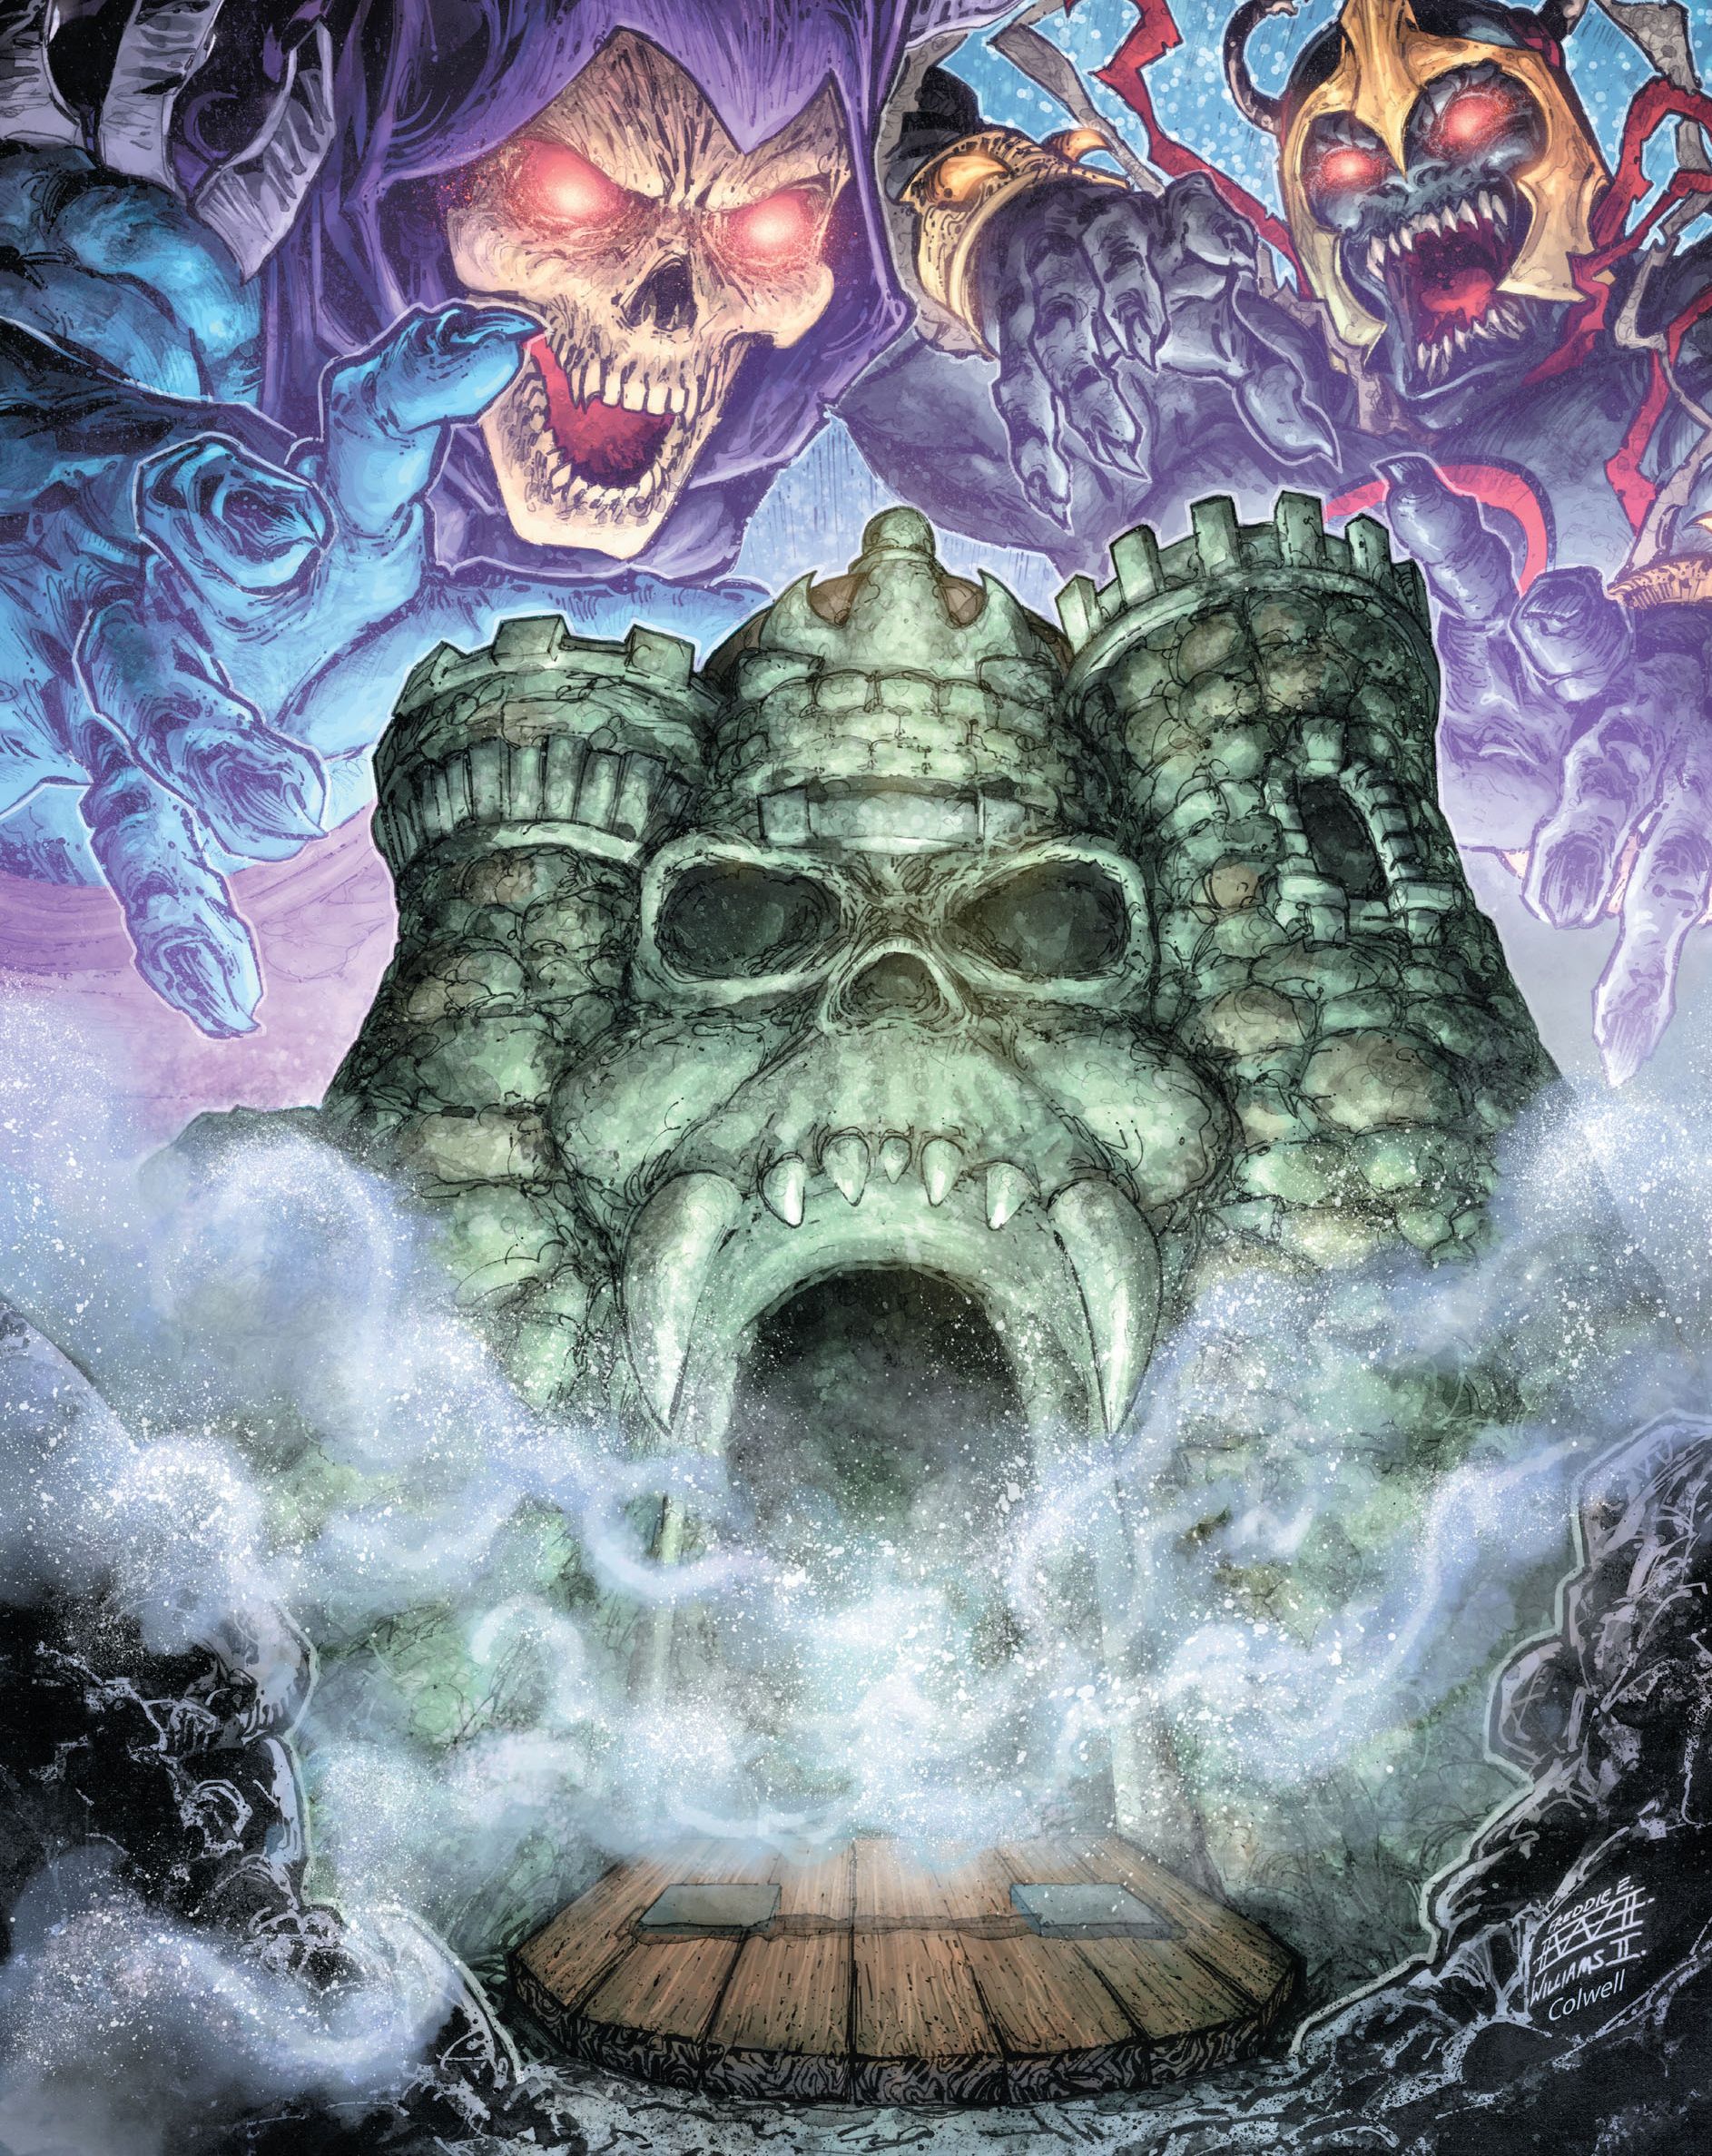 He-Man ThunderCats Issue #5